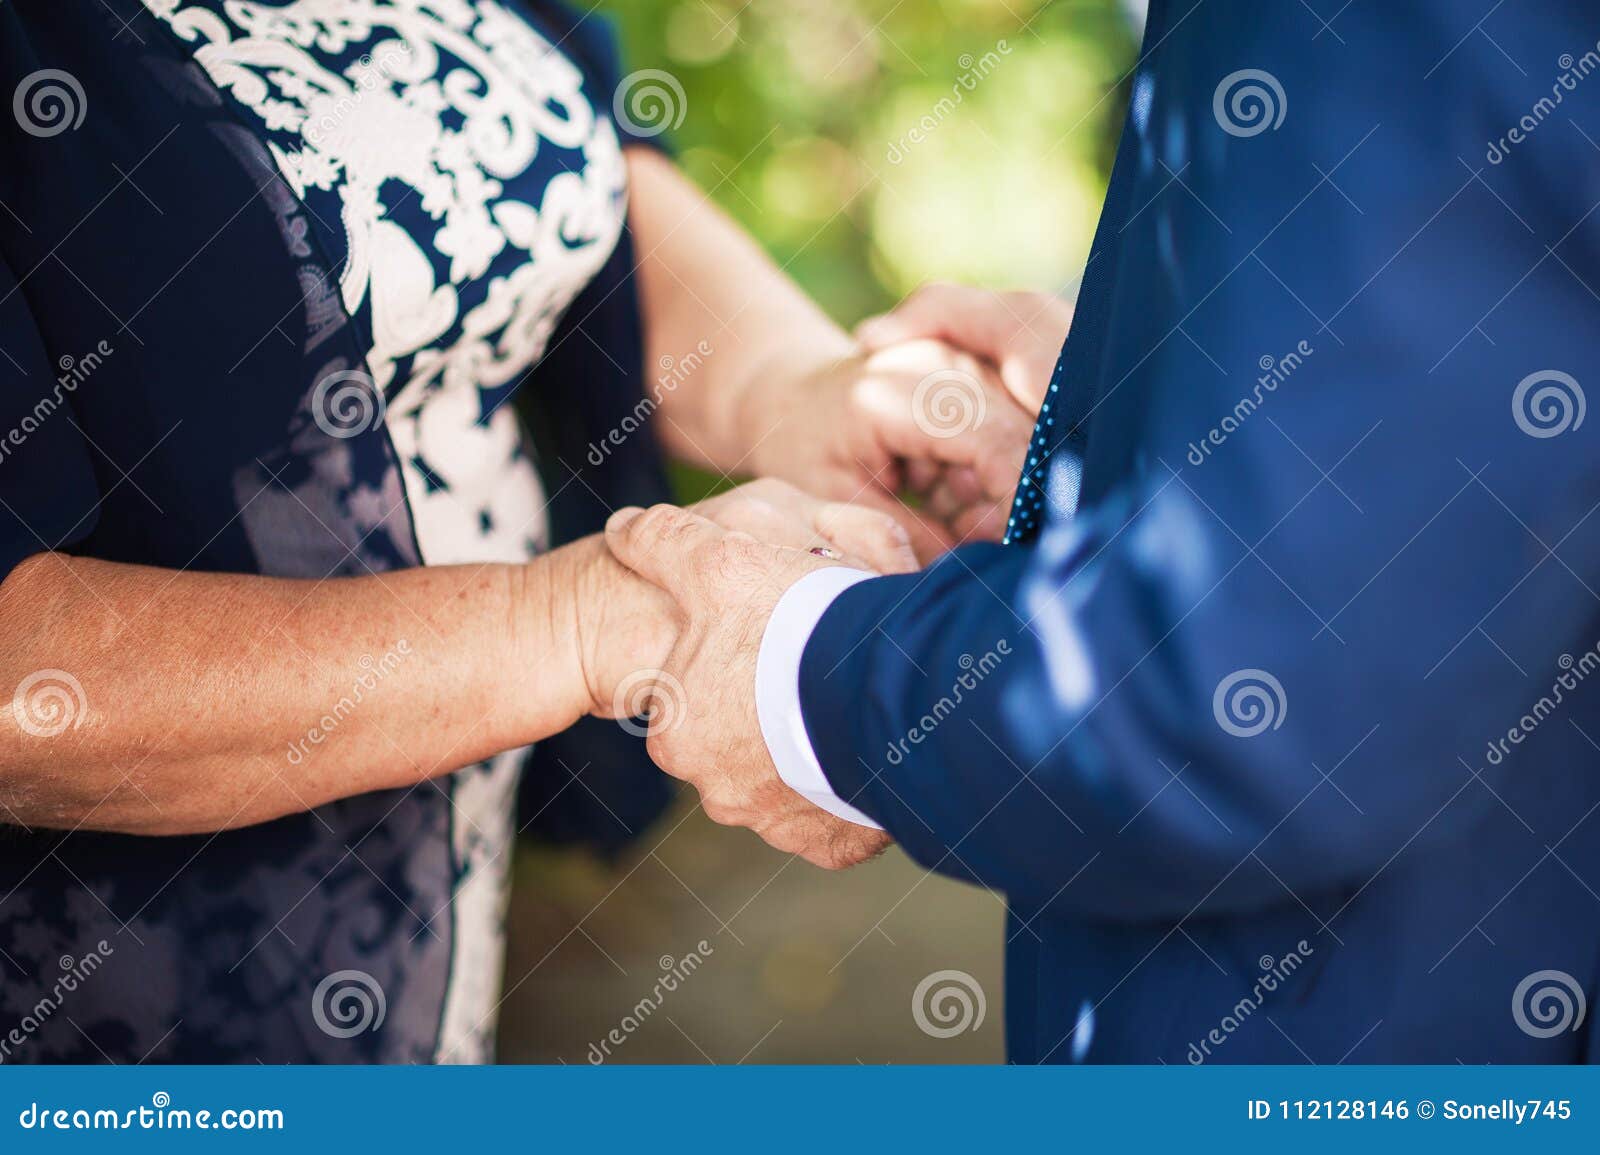 Пожилые держатся за руки. Мама жмет руку сыну. Рука пожилой матери держит руку сына. Мама держит сына за руку на свадьбе. Итальянская свадьба мама держит сына за руку.